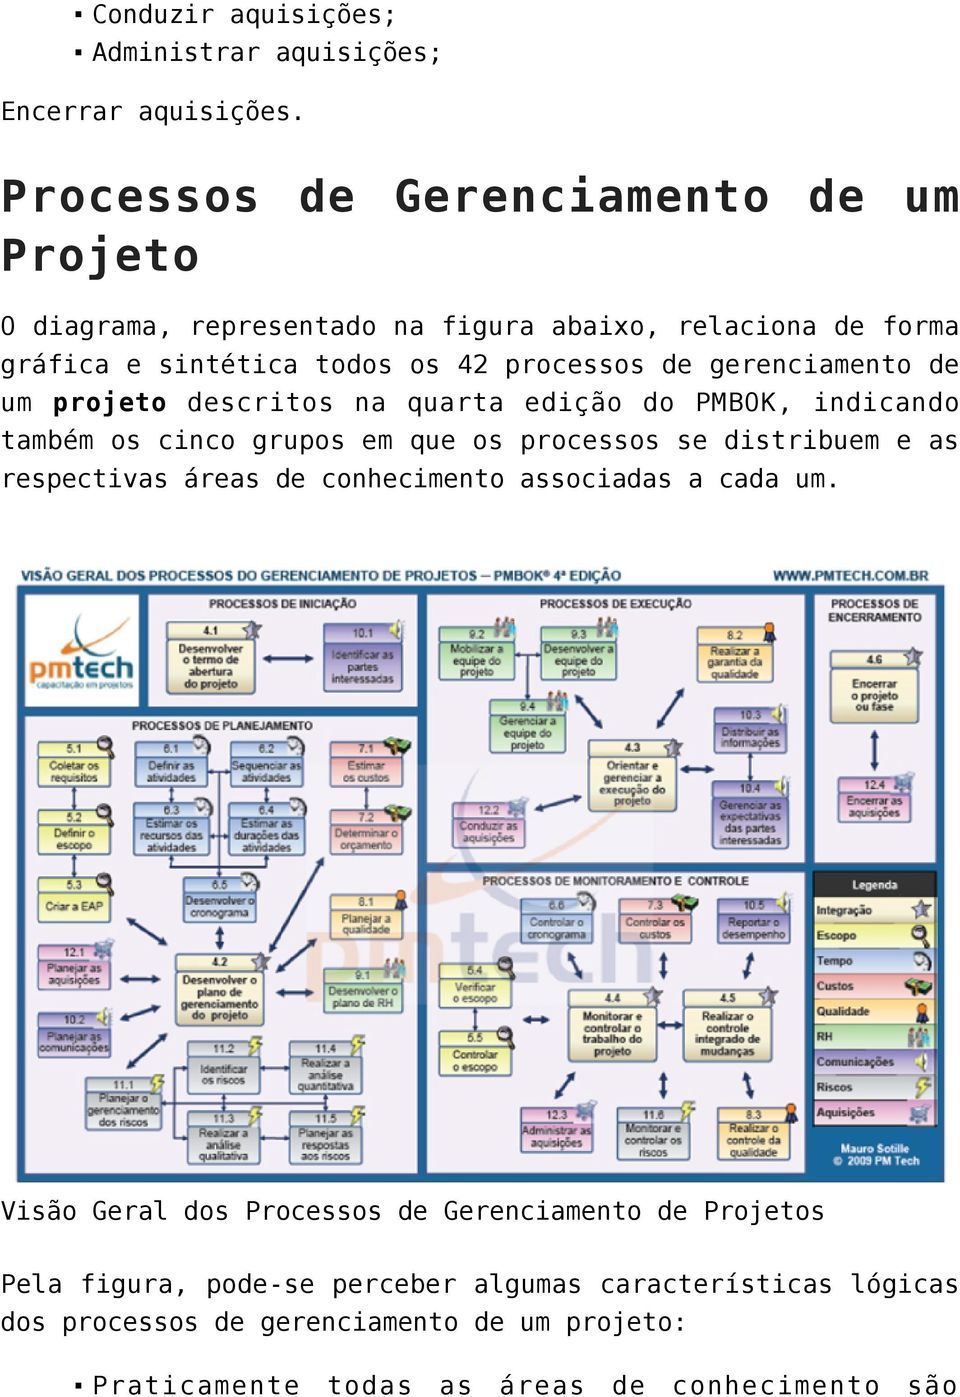 gerenciamento de um projeto descritos na quarta edição do PMBOK, indicando também os cinco grupos em que os processos se distribuem e as respectivas